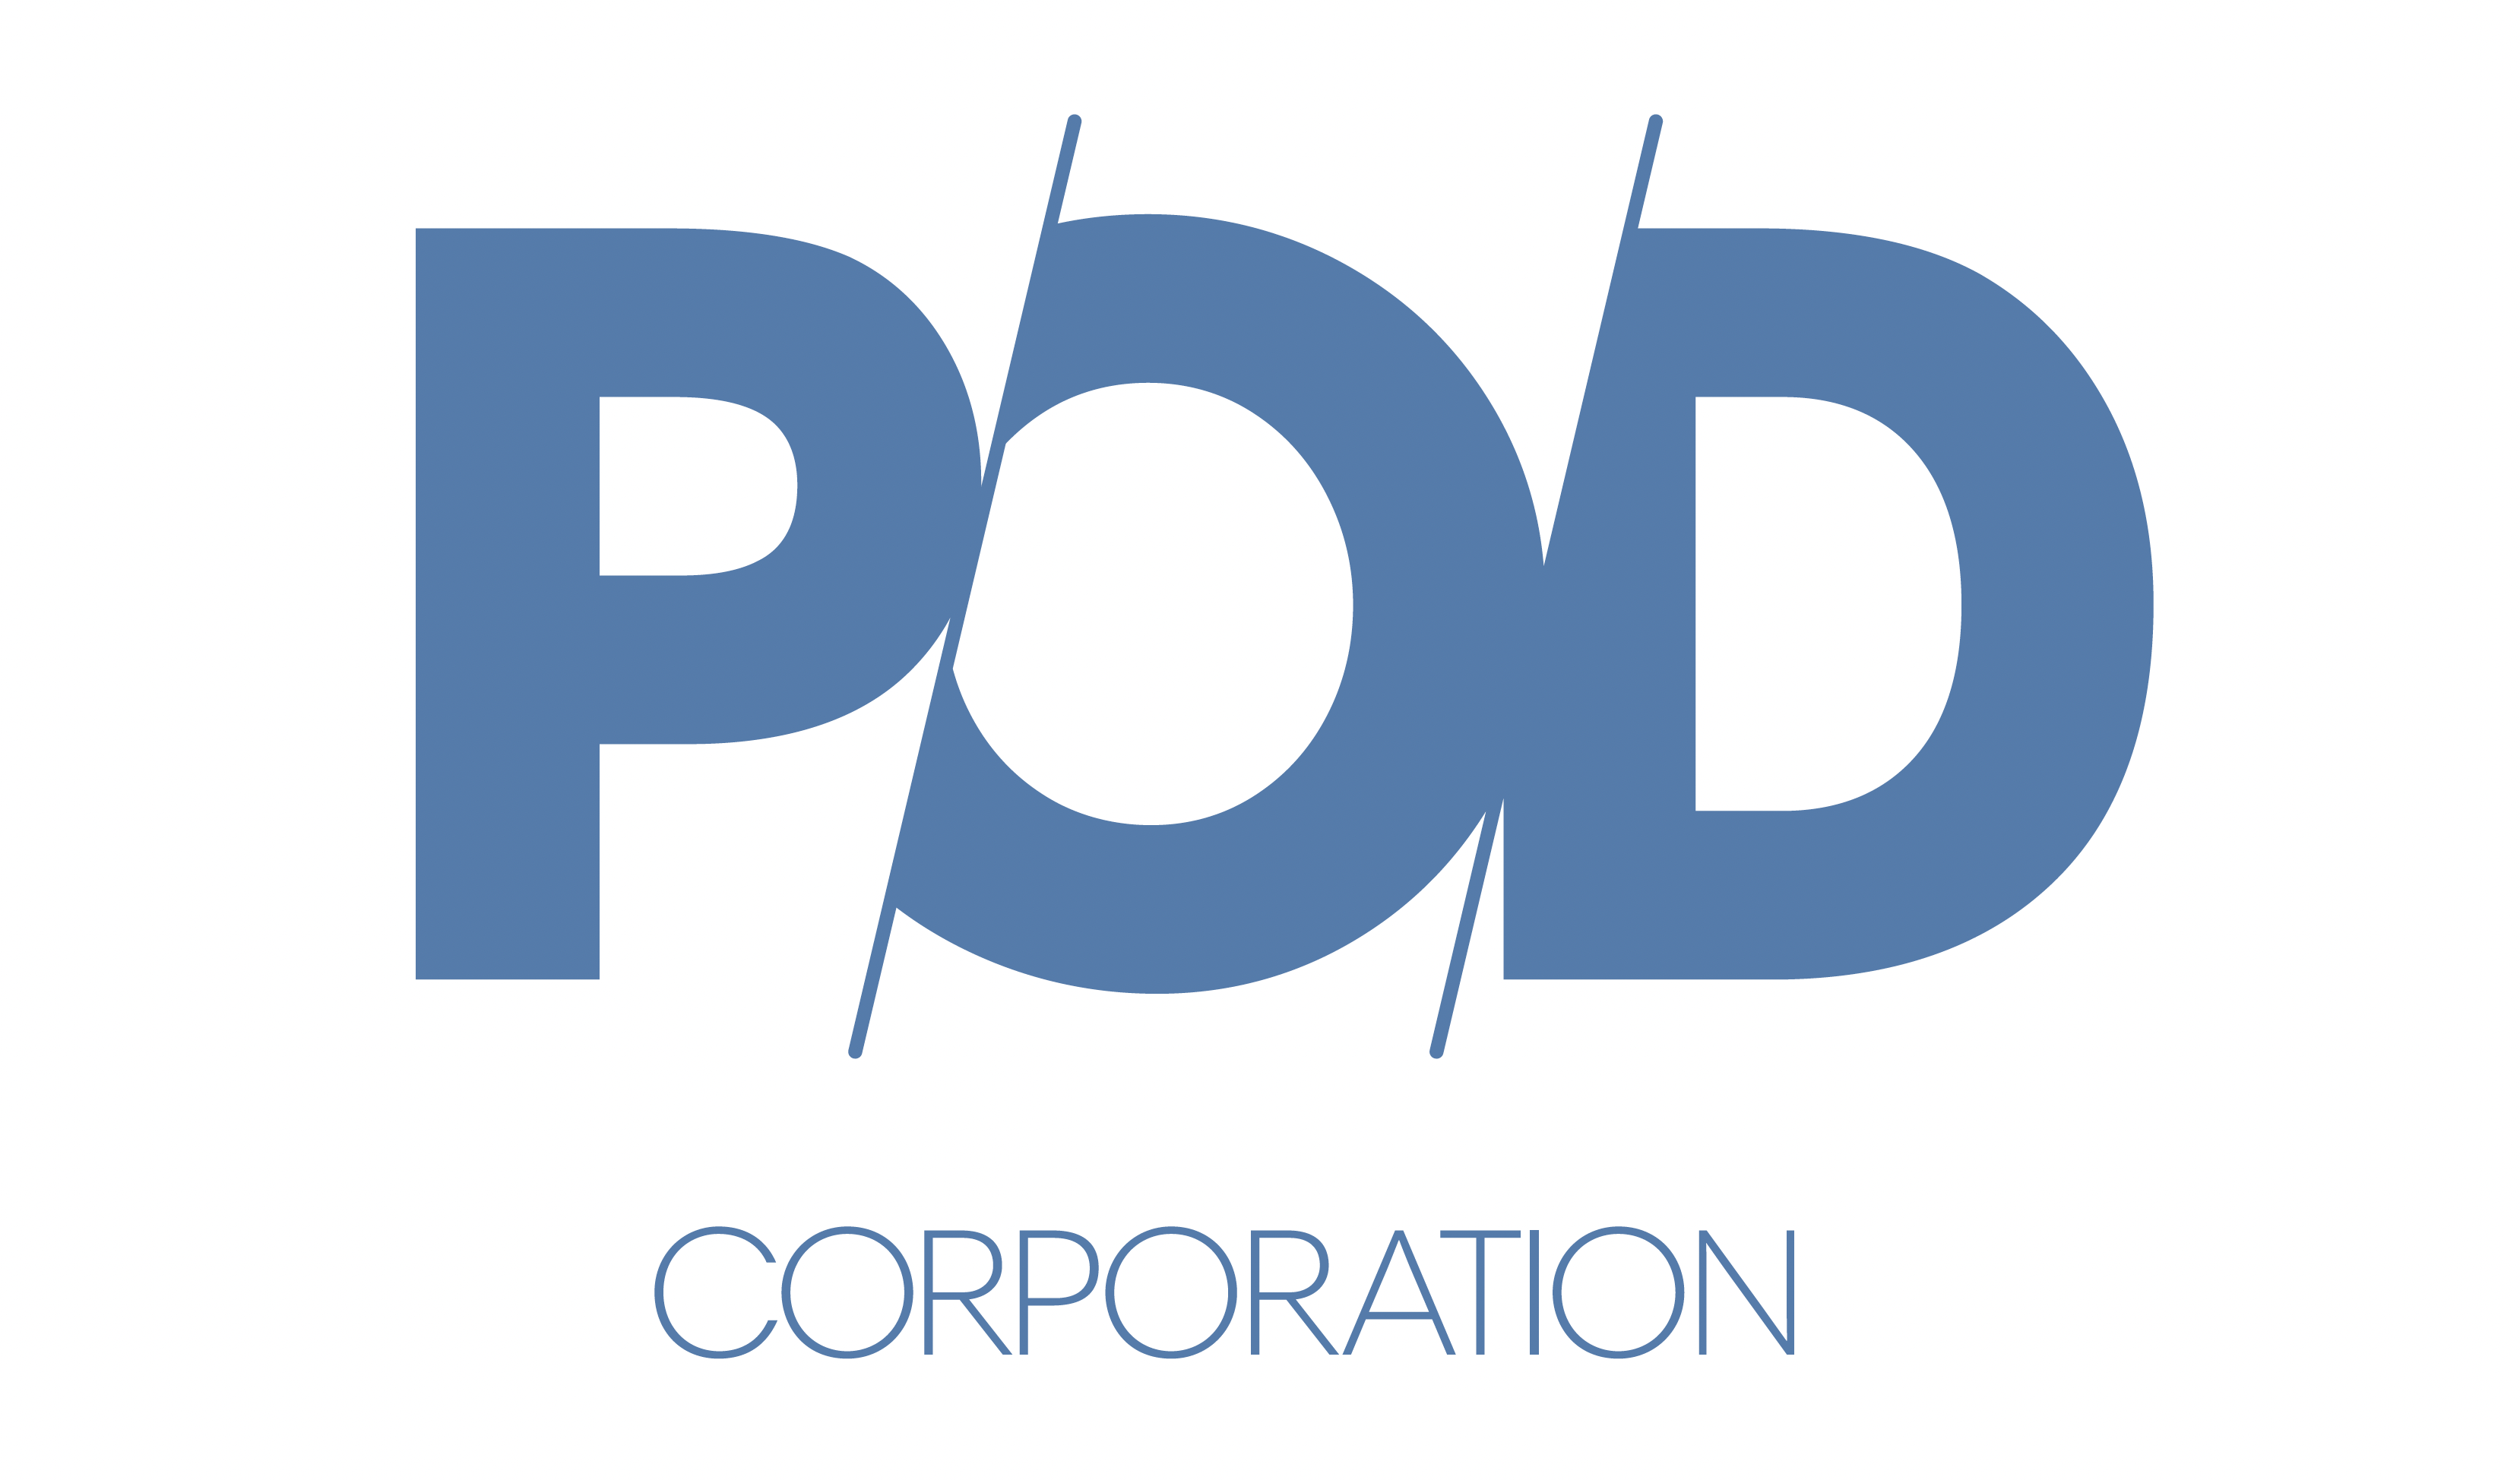 【プレスリリース】2022年3月31日、 POD Corporationは資本主義に新しい潮流を創り出すべく、稀代のアントレプレナーたちを集結させます。